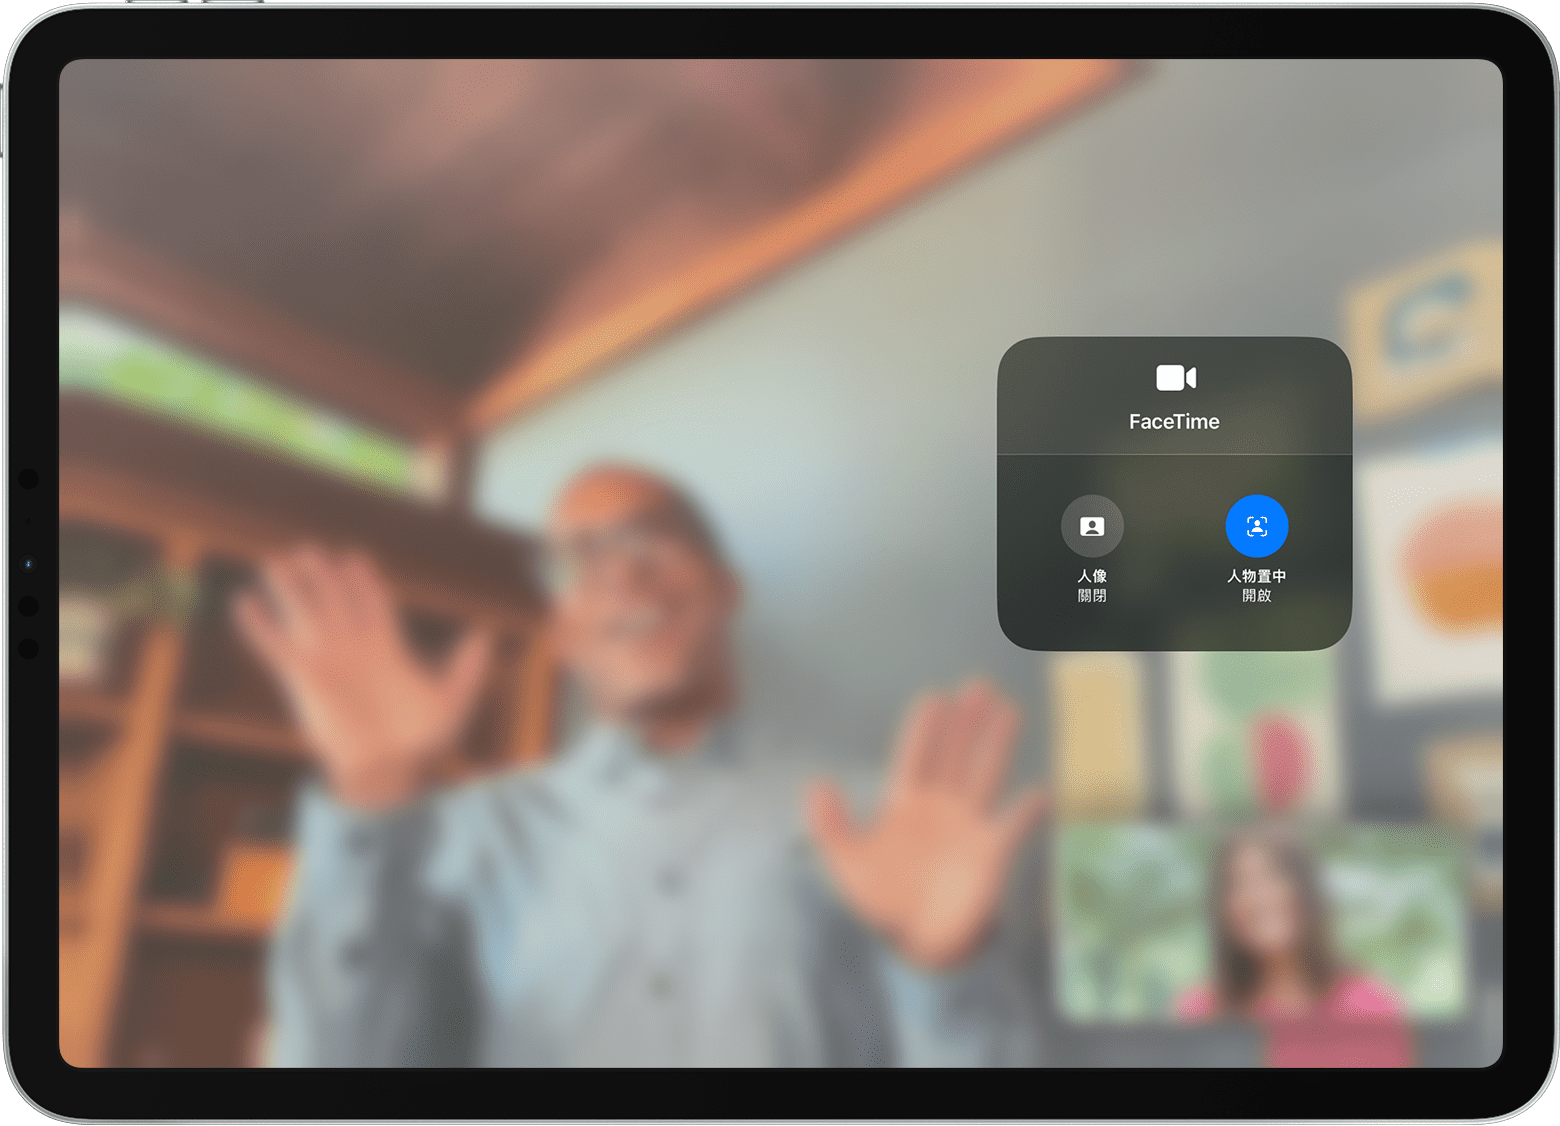 iPad 畫面正顯示 FaceTime 通話和「影片效果」選項